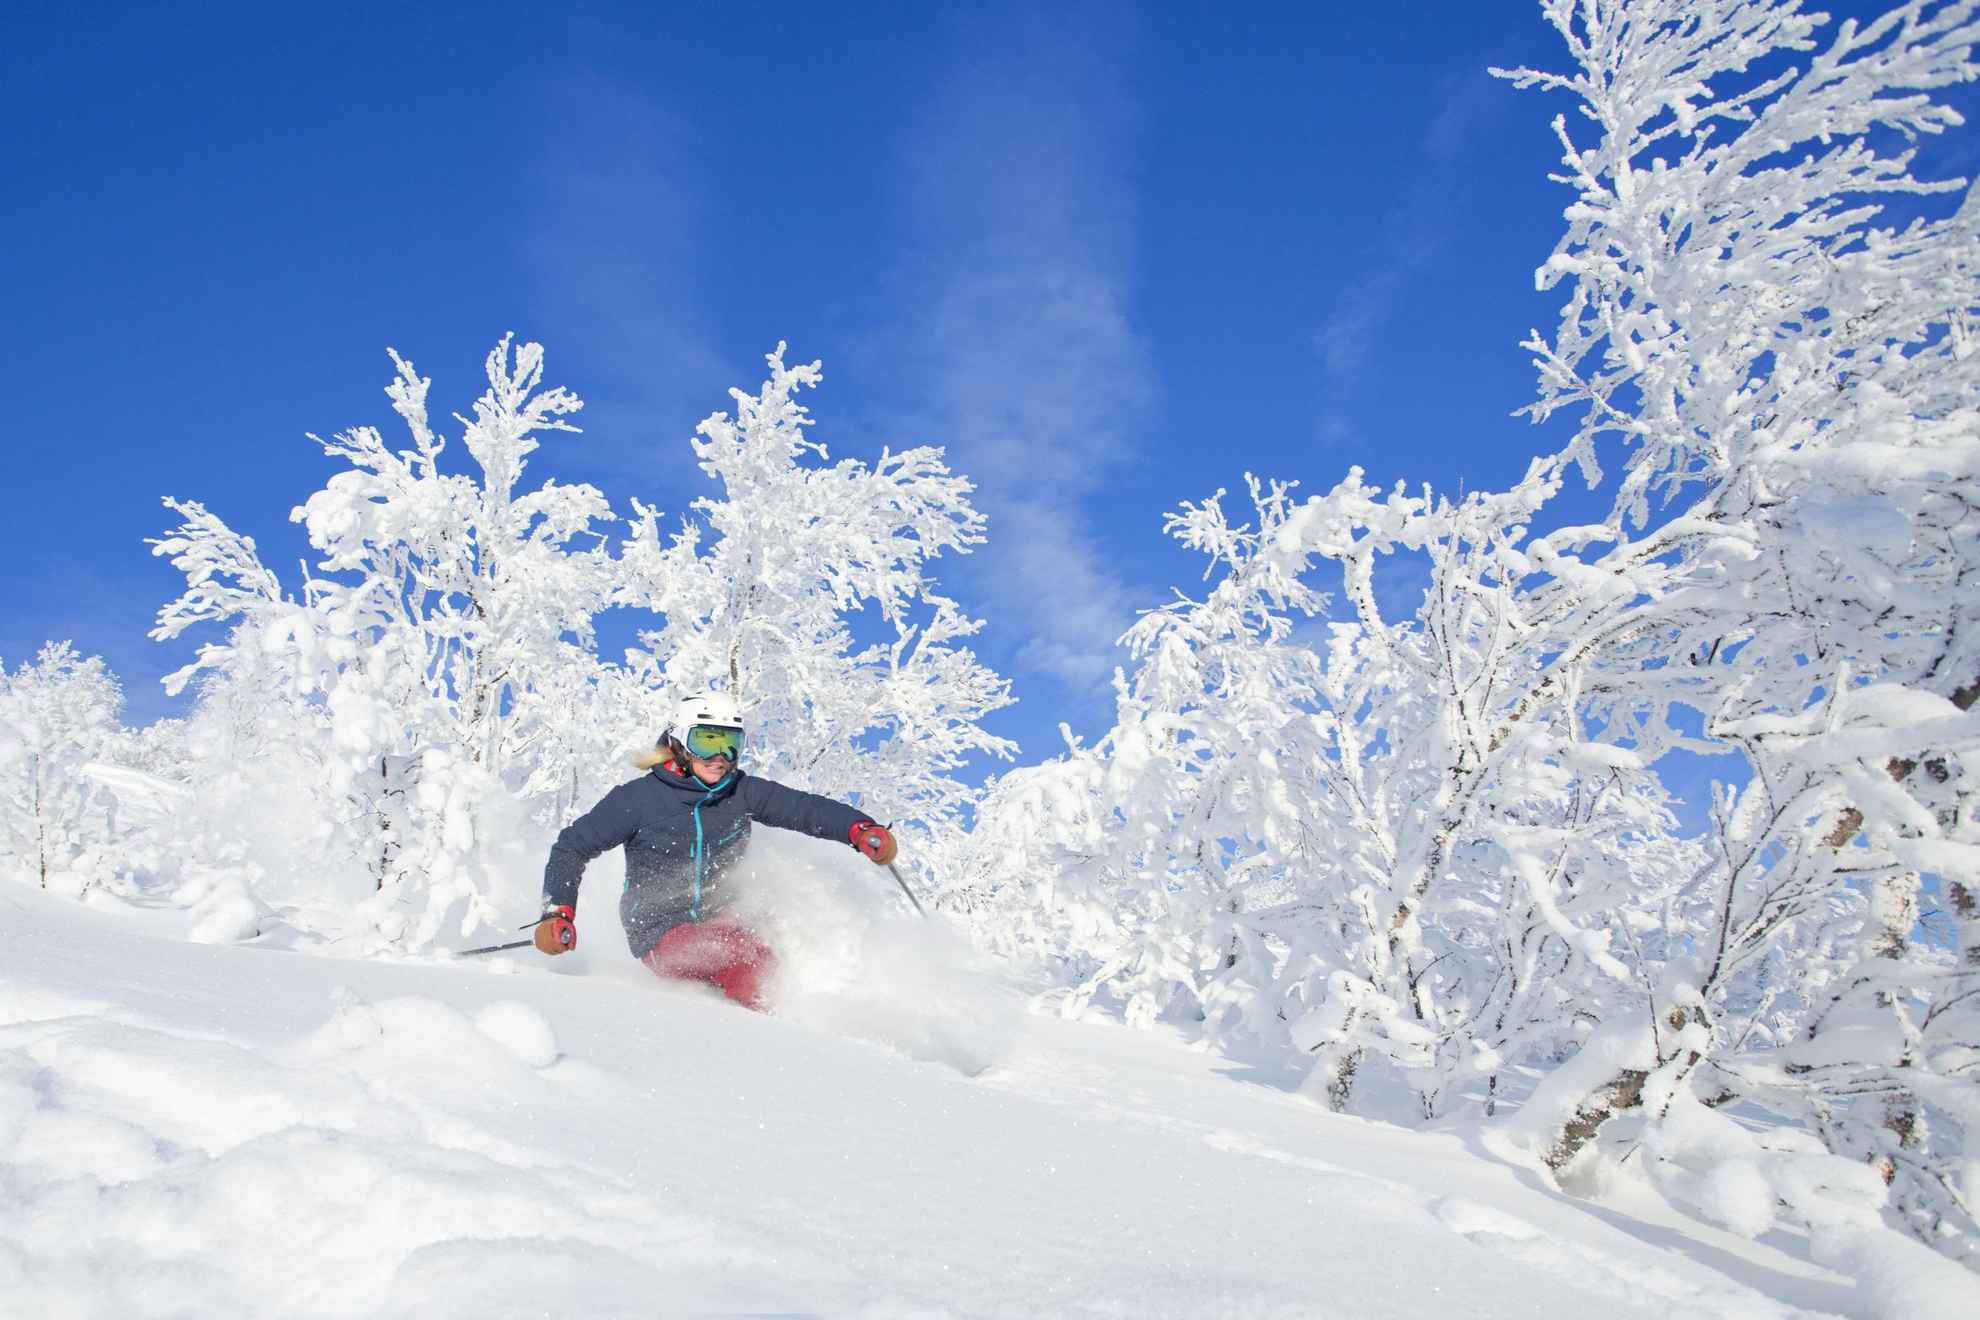 Een vrouw is off-piste aan het skiën. De grond en de bomen zijn bedekt met sneeuw en de lucht is blauw.